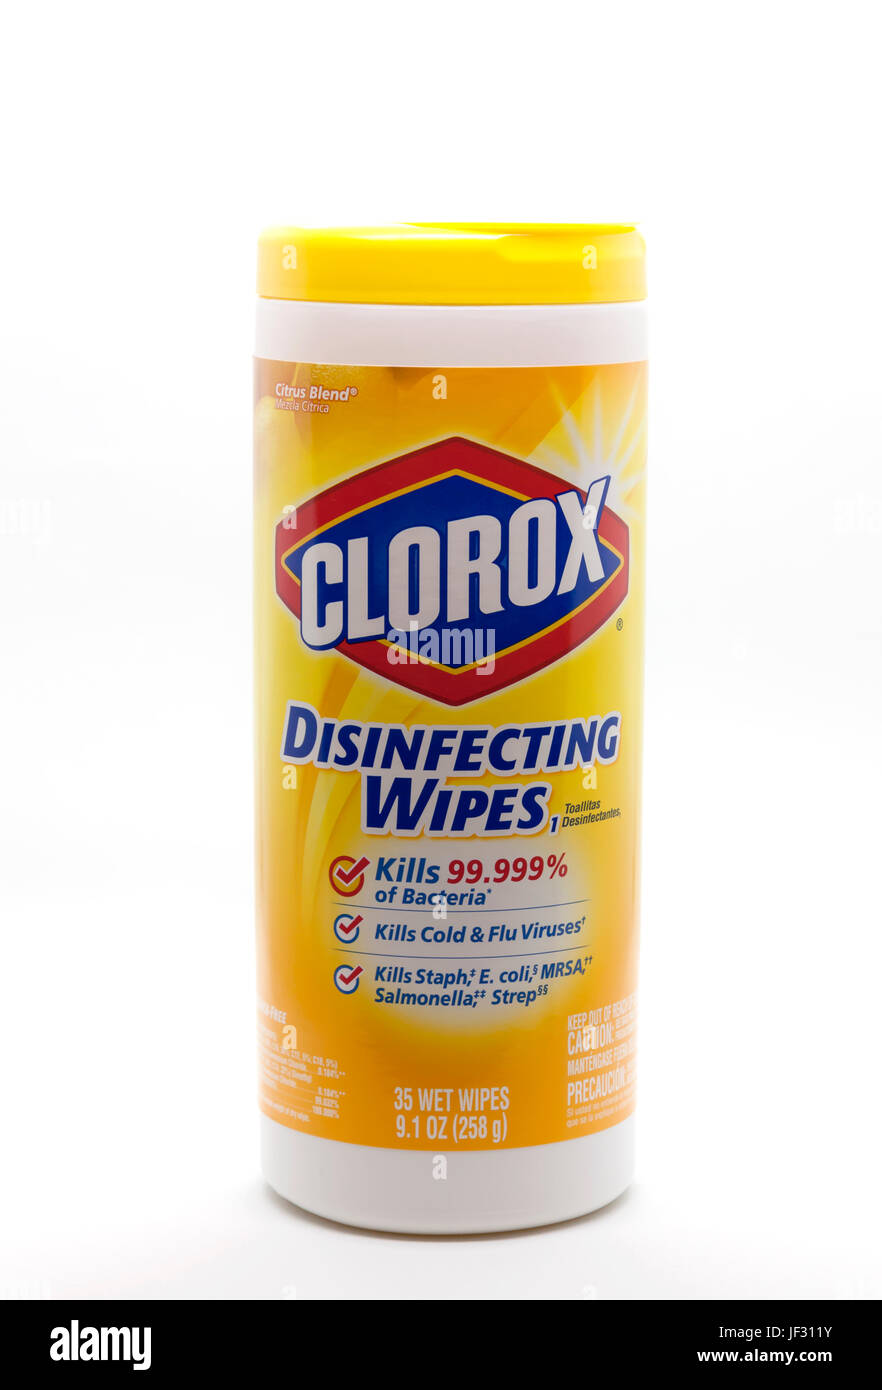 Clorox Desinfektion Tücher in einen Container, der reinigt, desinfiziert und tötet Bakterien und Keime. Stockfoto